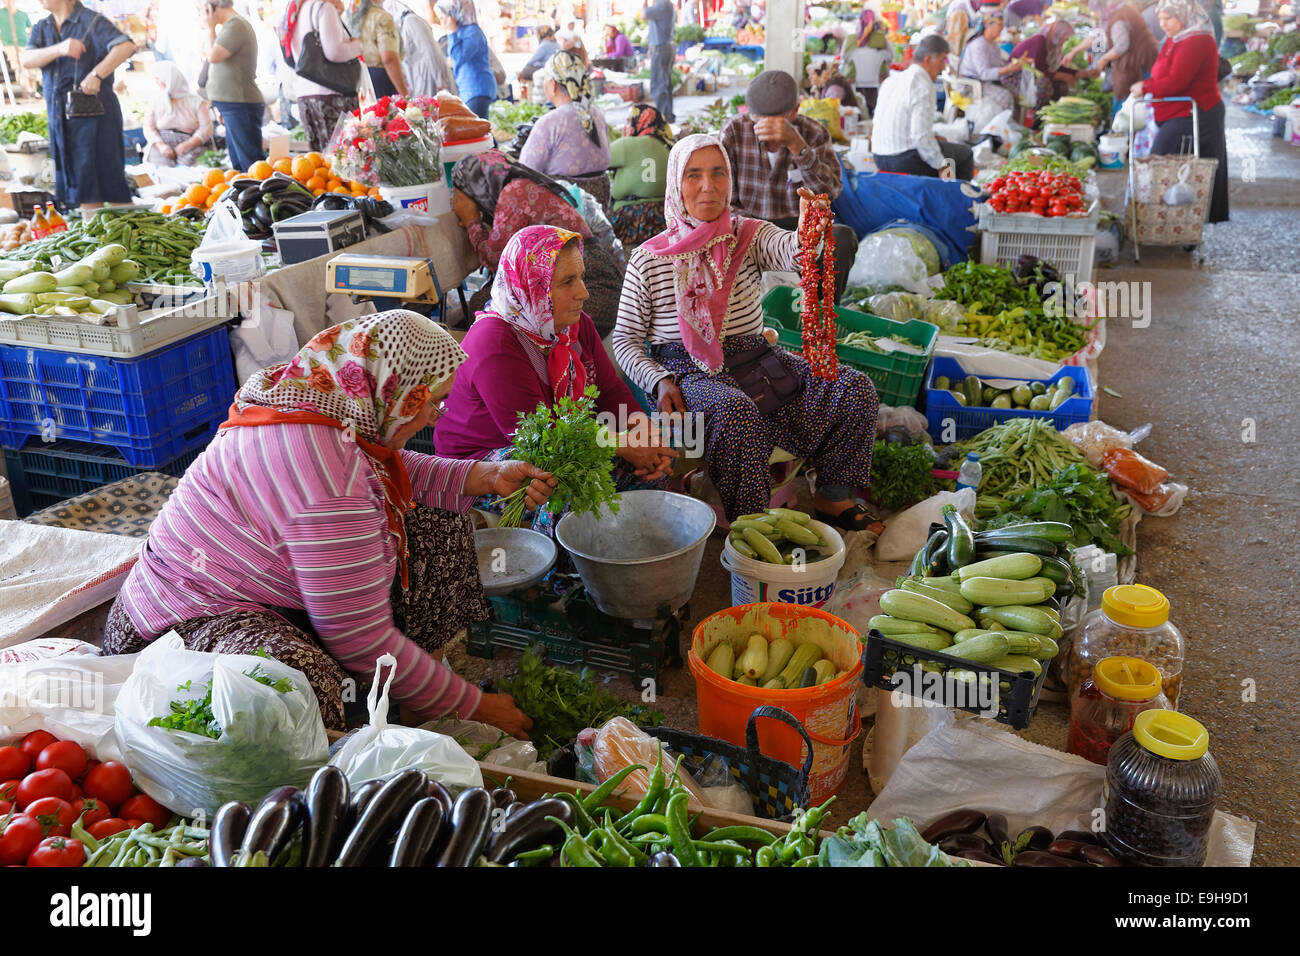 La mujer en el mercado del mercado de agricultores, Manavgat, provincia de Antalya, Turquía Foto de stock